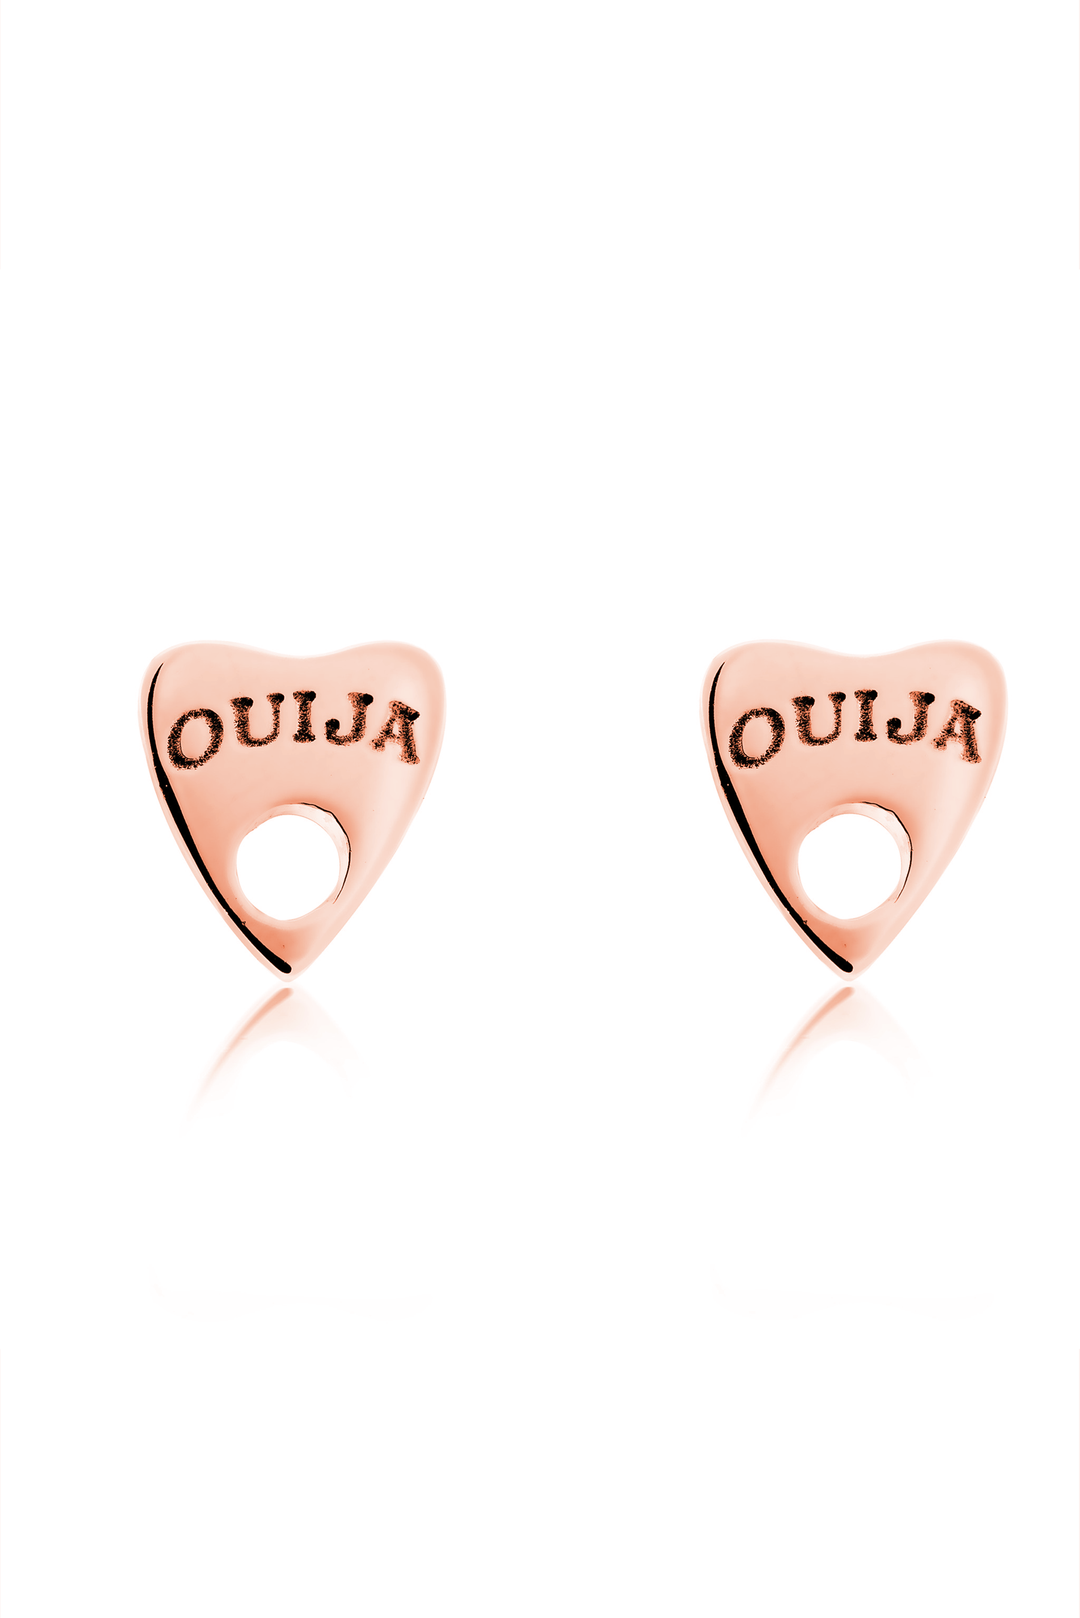 Ouija 9ct Gold Earrings